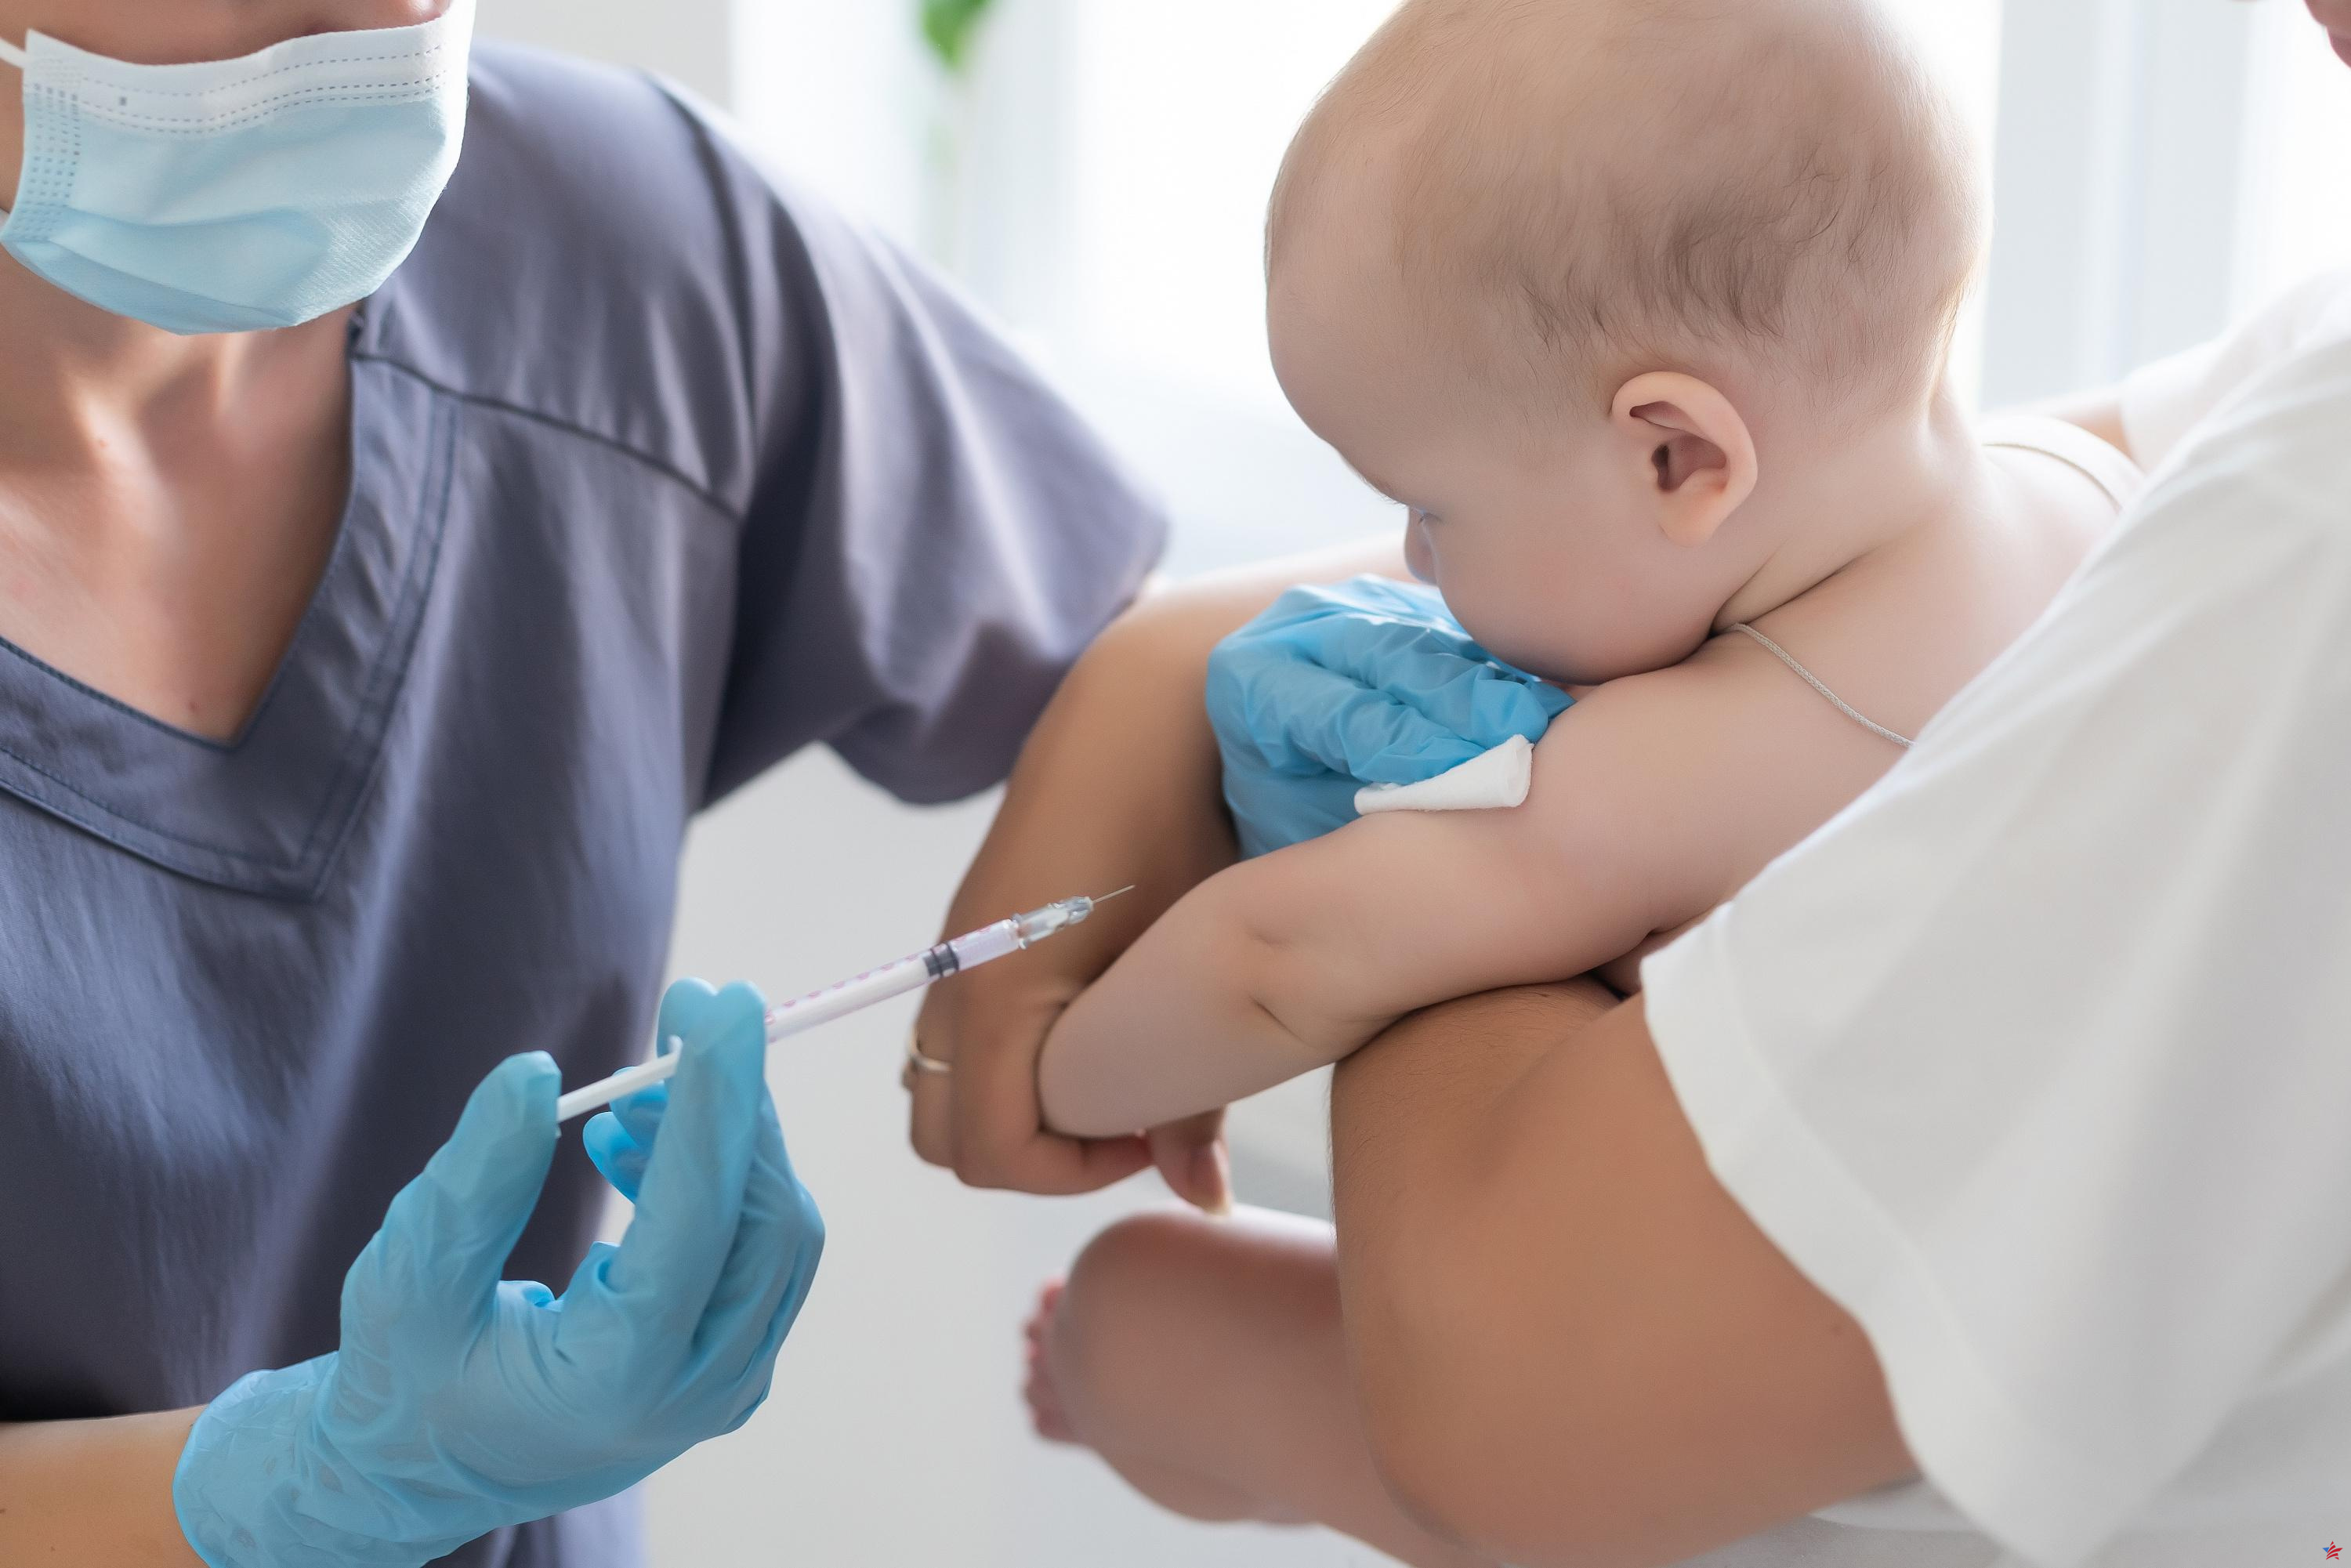 Epidemia de sarampión en Lyon: “El virus se desarrolla en comunidades resistentes a la vacunación”